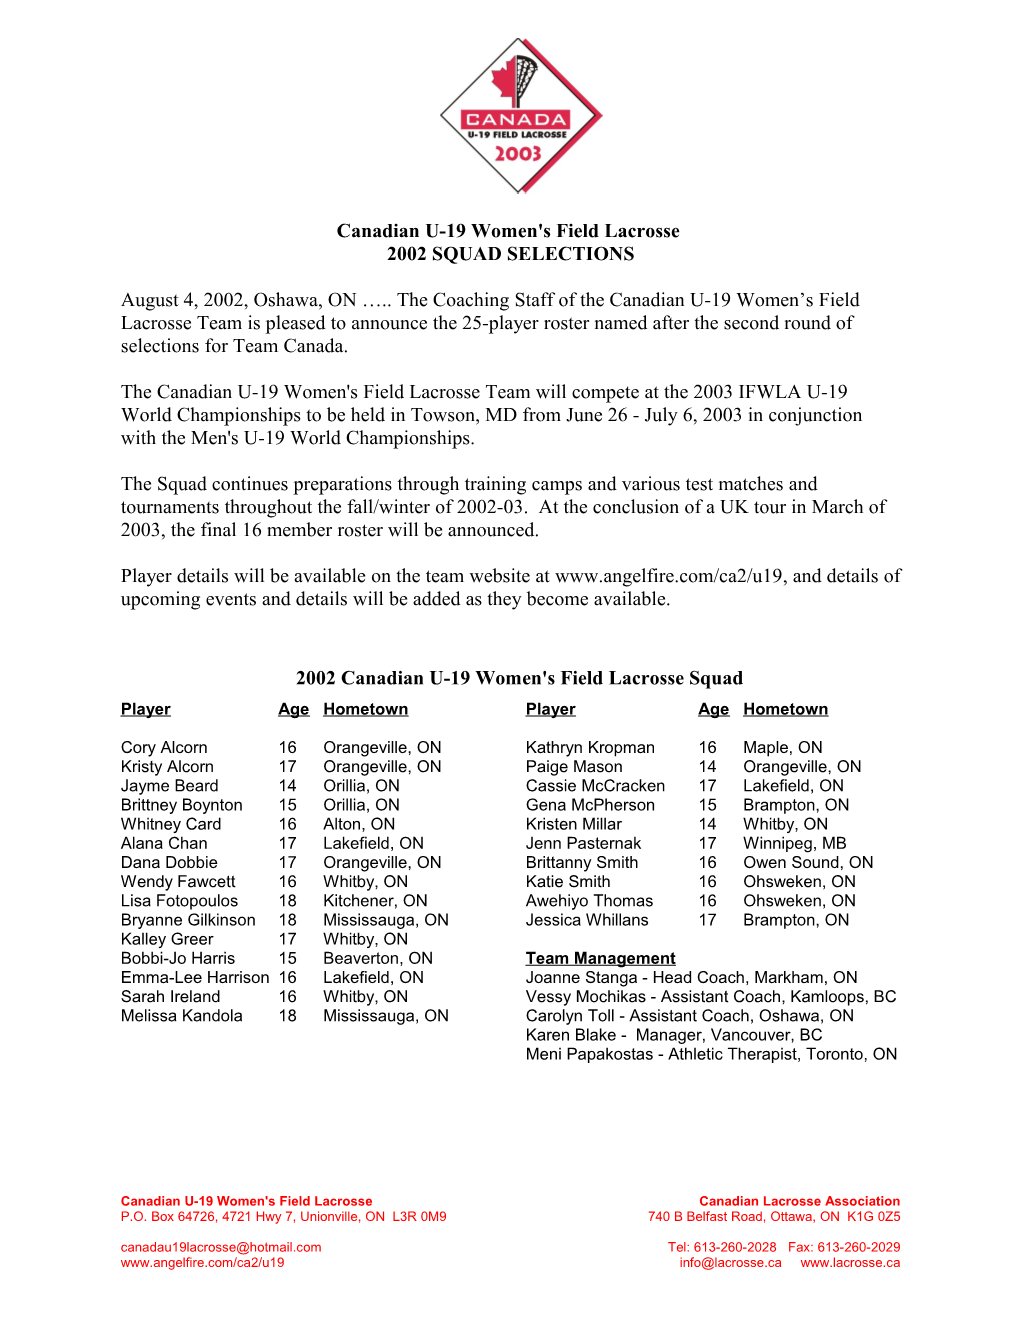 Canadian U-19 Women S Field Lacrosse - Press Release 20020804